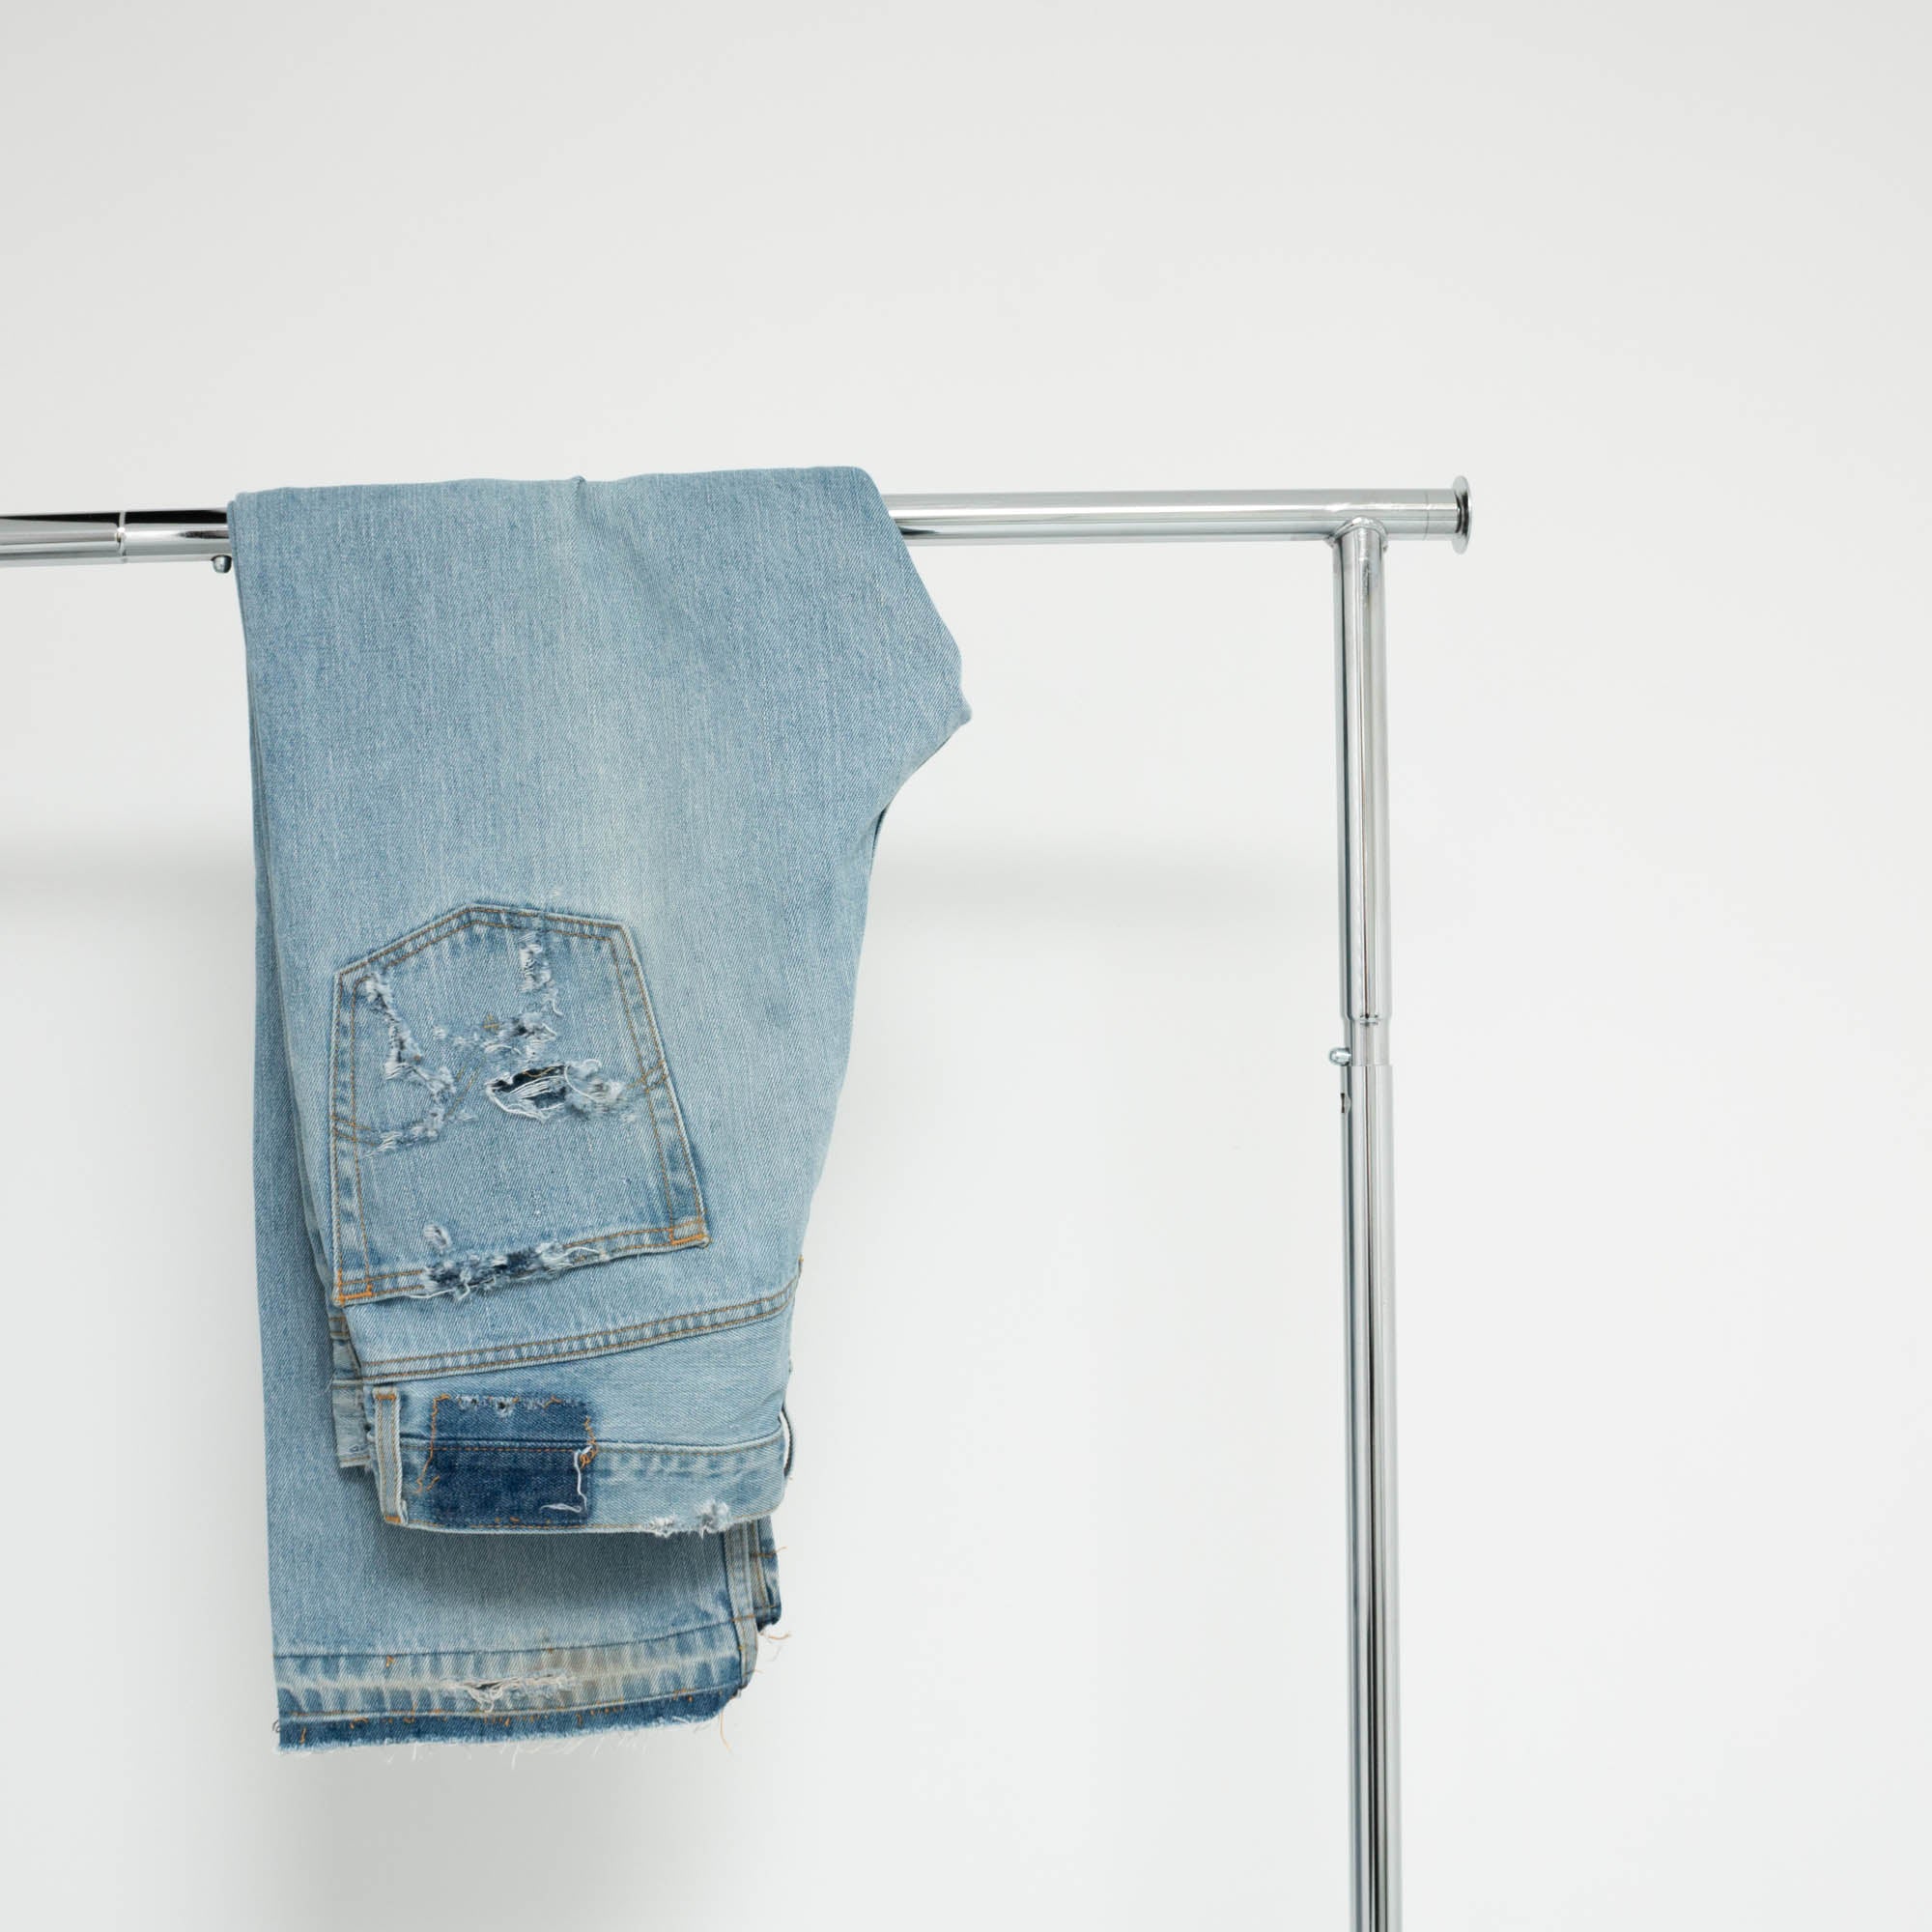 "DISTRESSED" Jeans W36 L30